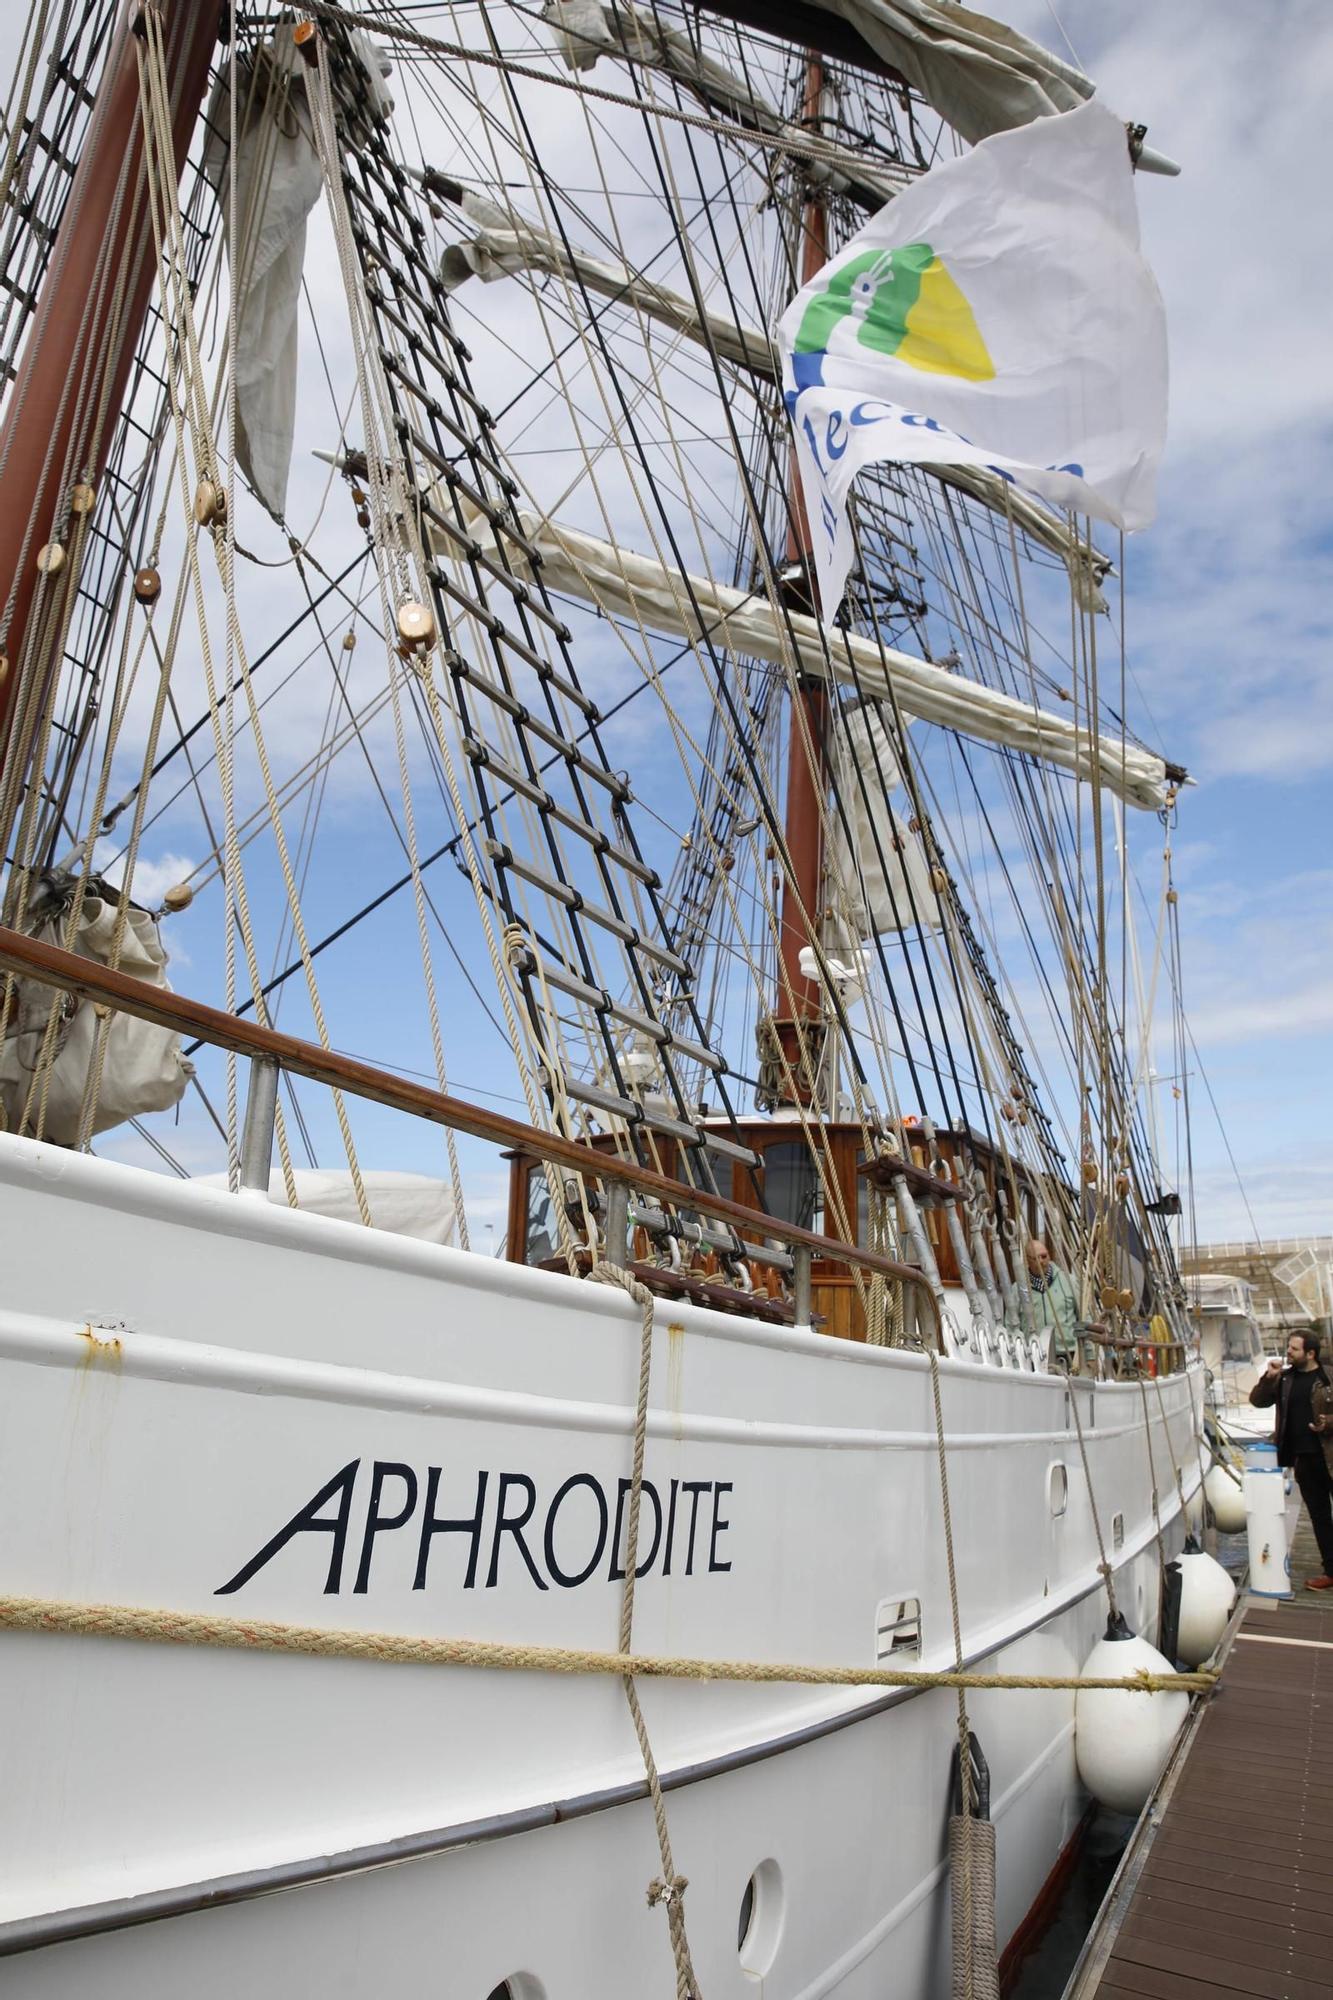 Así es el Aphrodite, el velero de lujo atracado en Gijón (en imágenes)